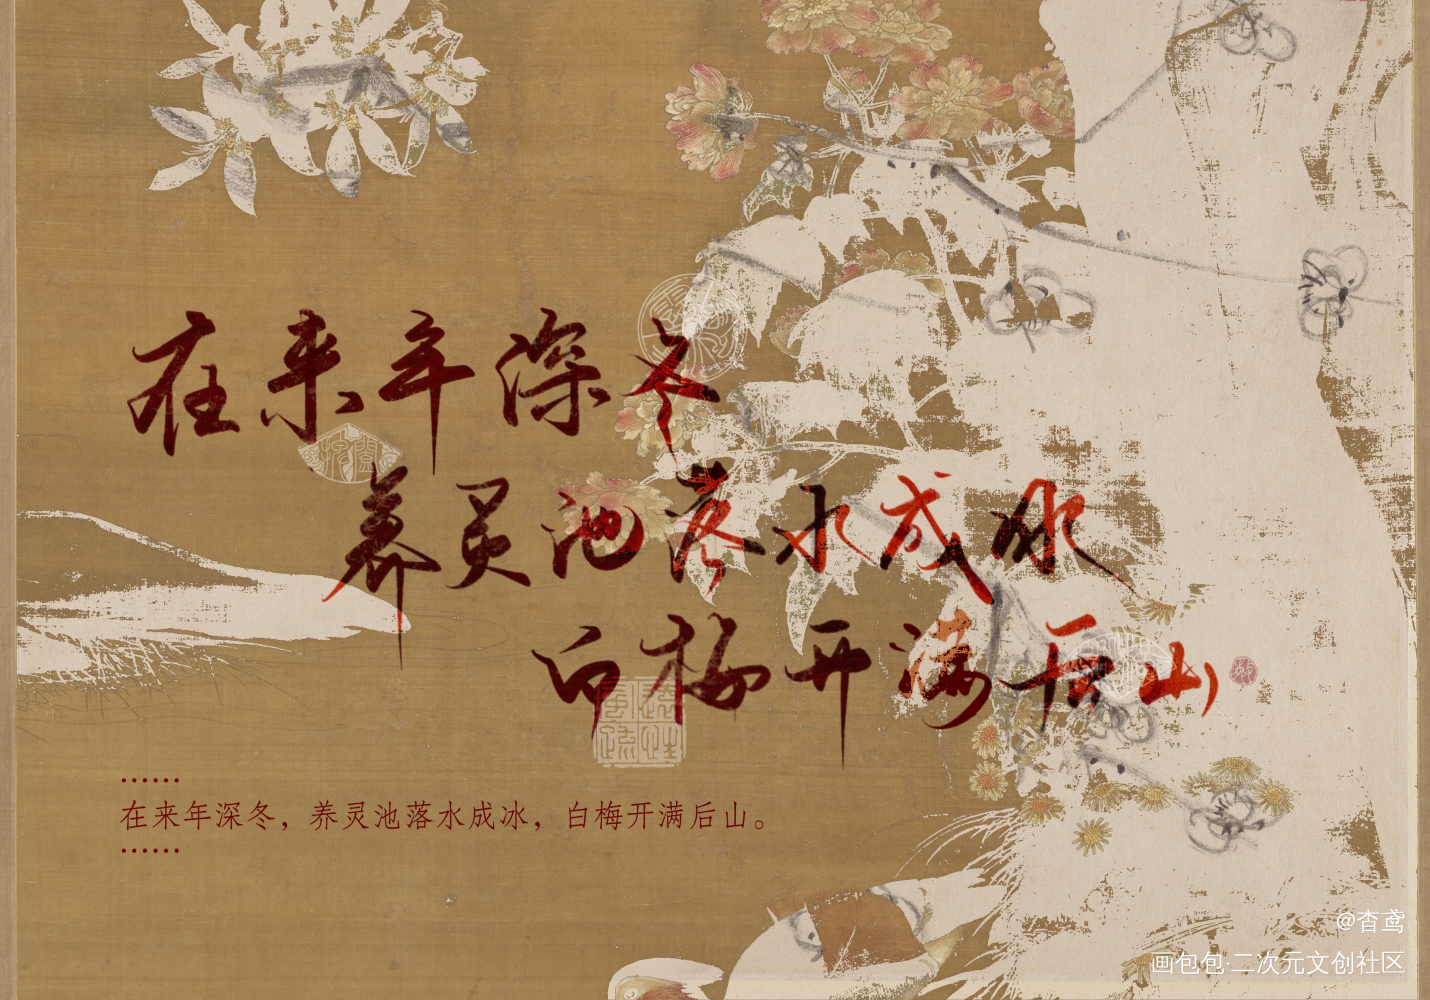 【判官】系列4/9_木苏里判官字体设计见字如晤手写绘画作品